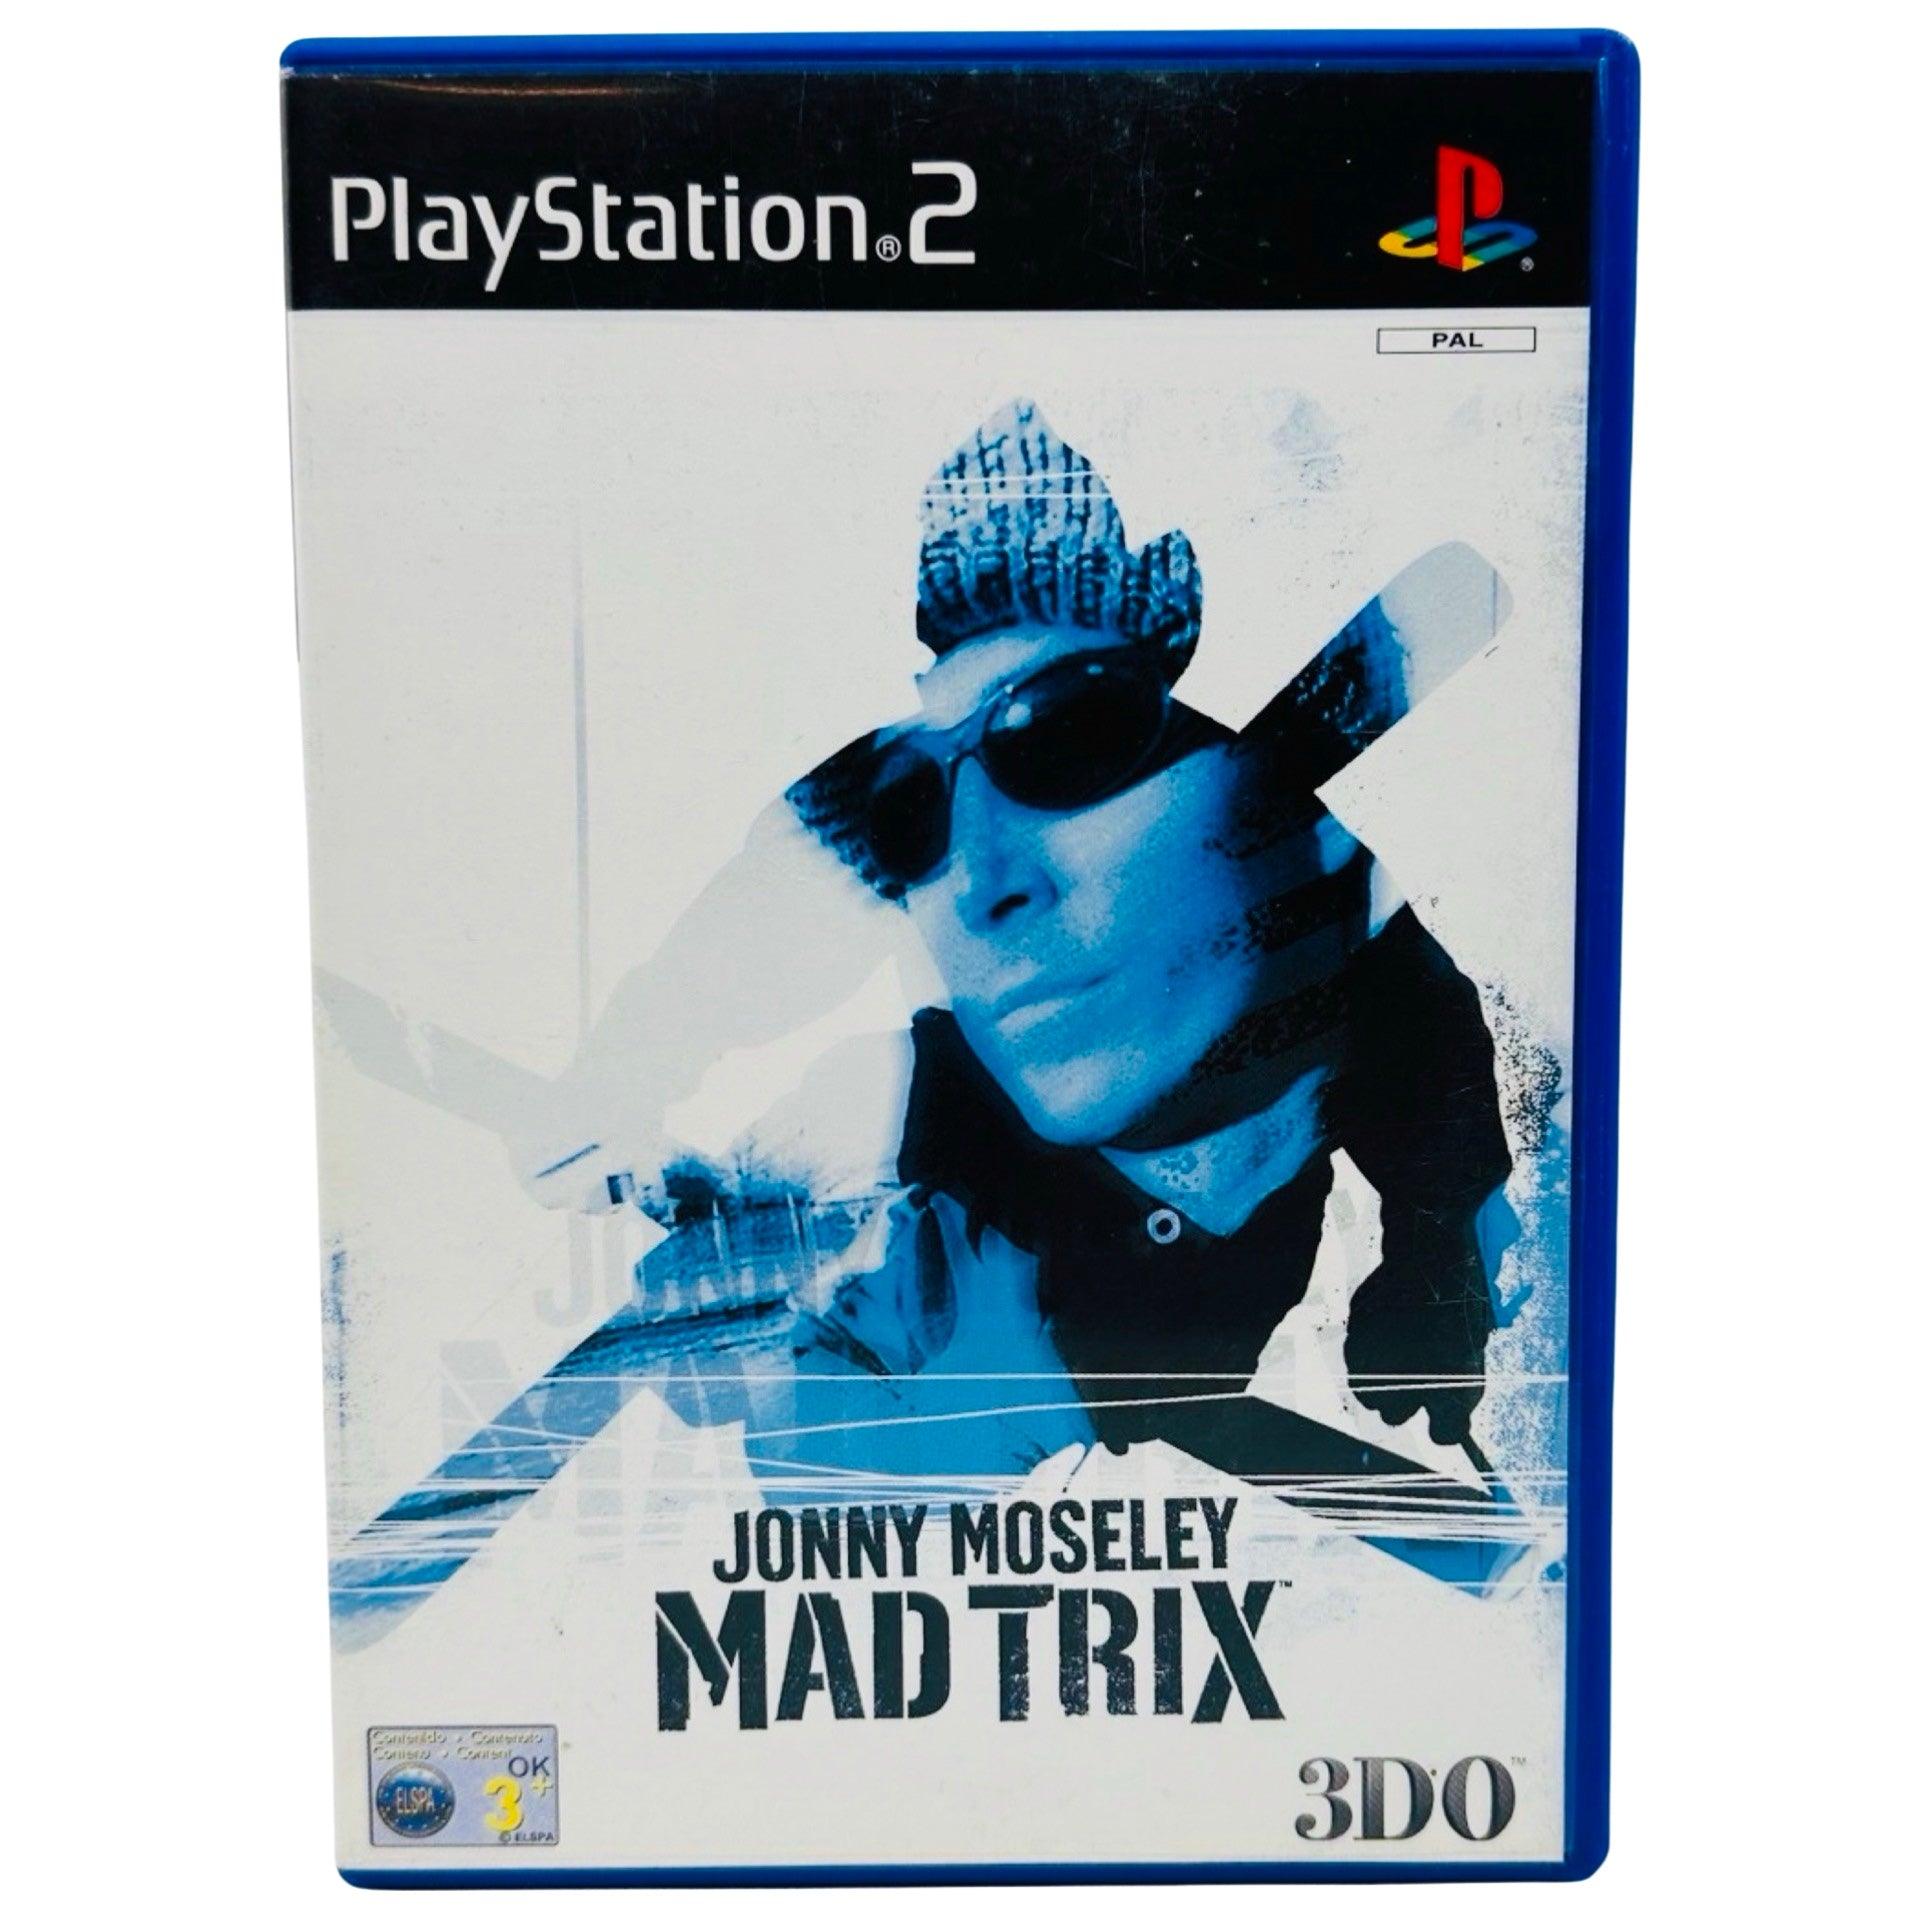 PS2: Jonny Moseley Mad Trix - RetroGaming.no